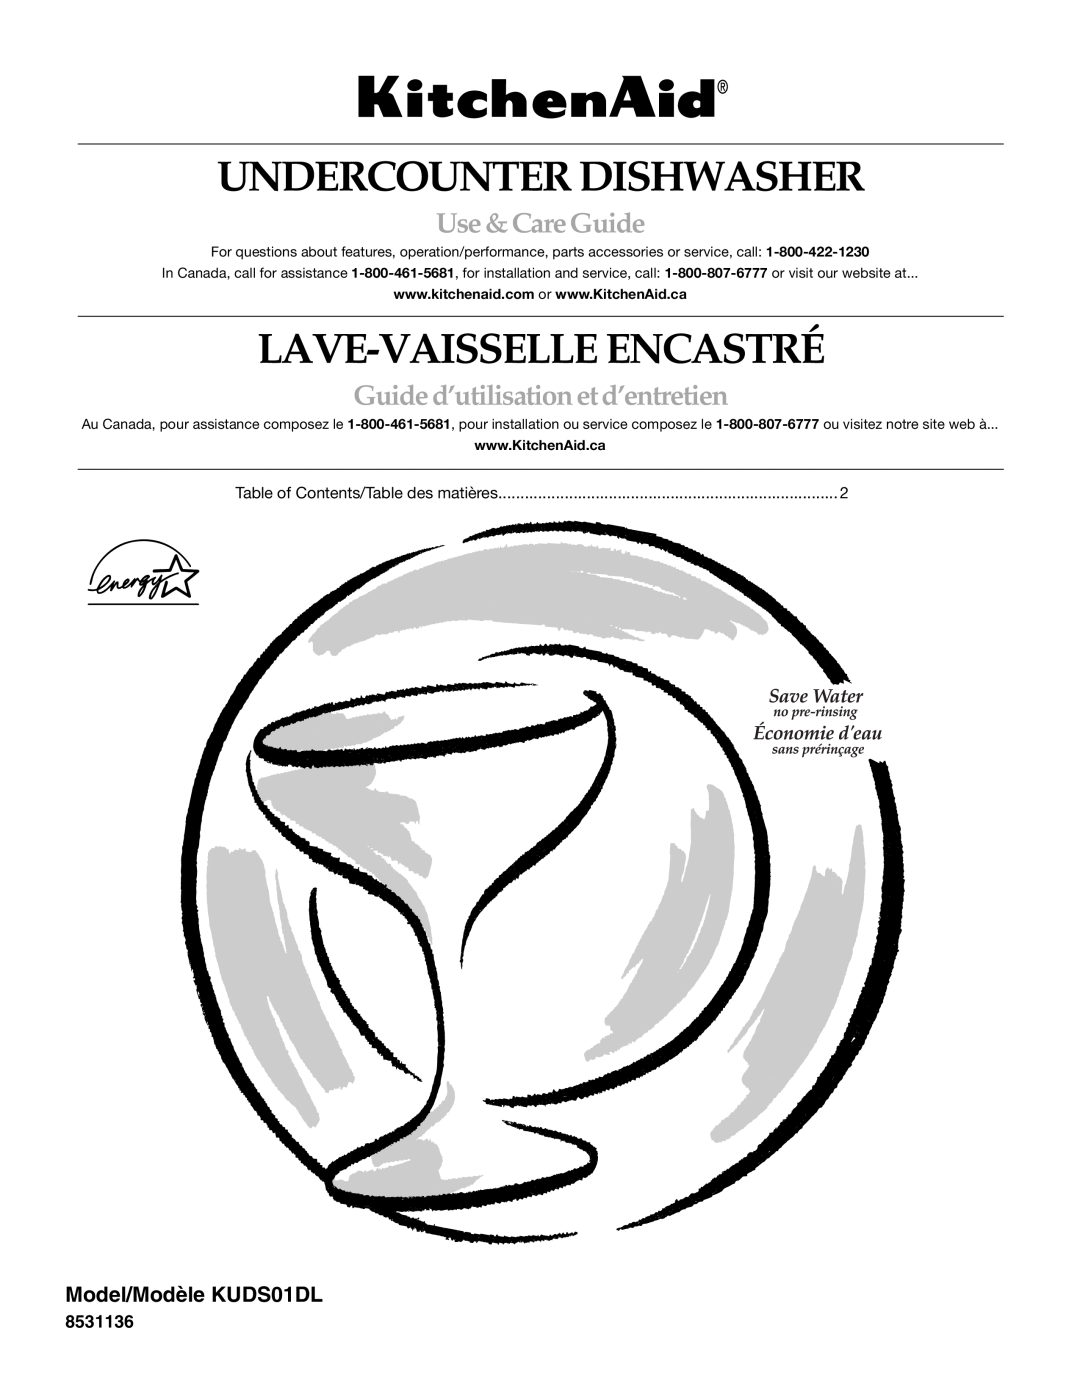 KitchenAid manual Undercounter Dishwasher, Lave-Vaisselle Encastré, Use &CareGuide, Model/Modèle KUDS01DL 